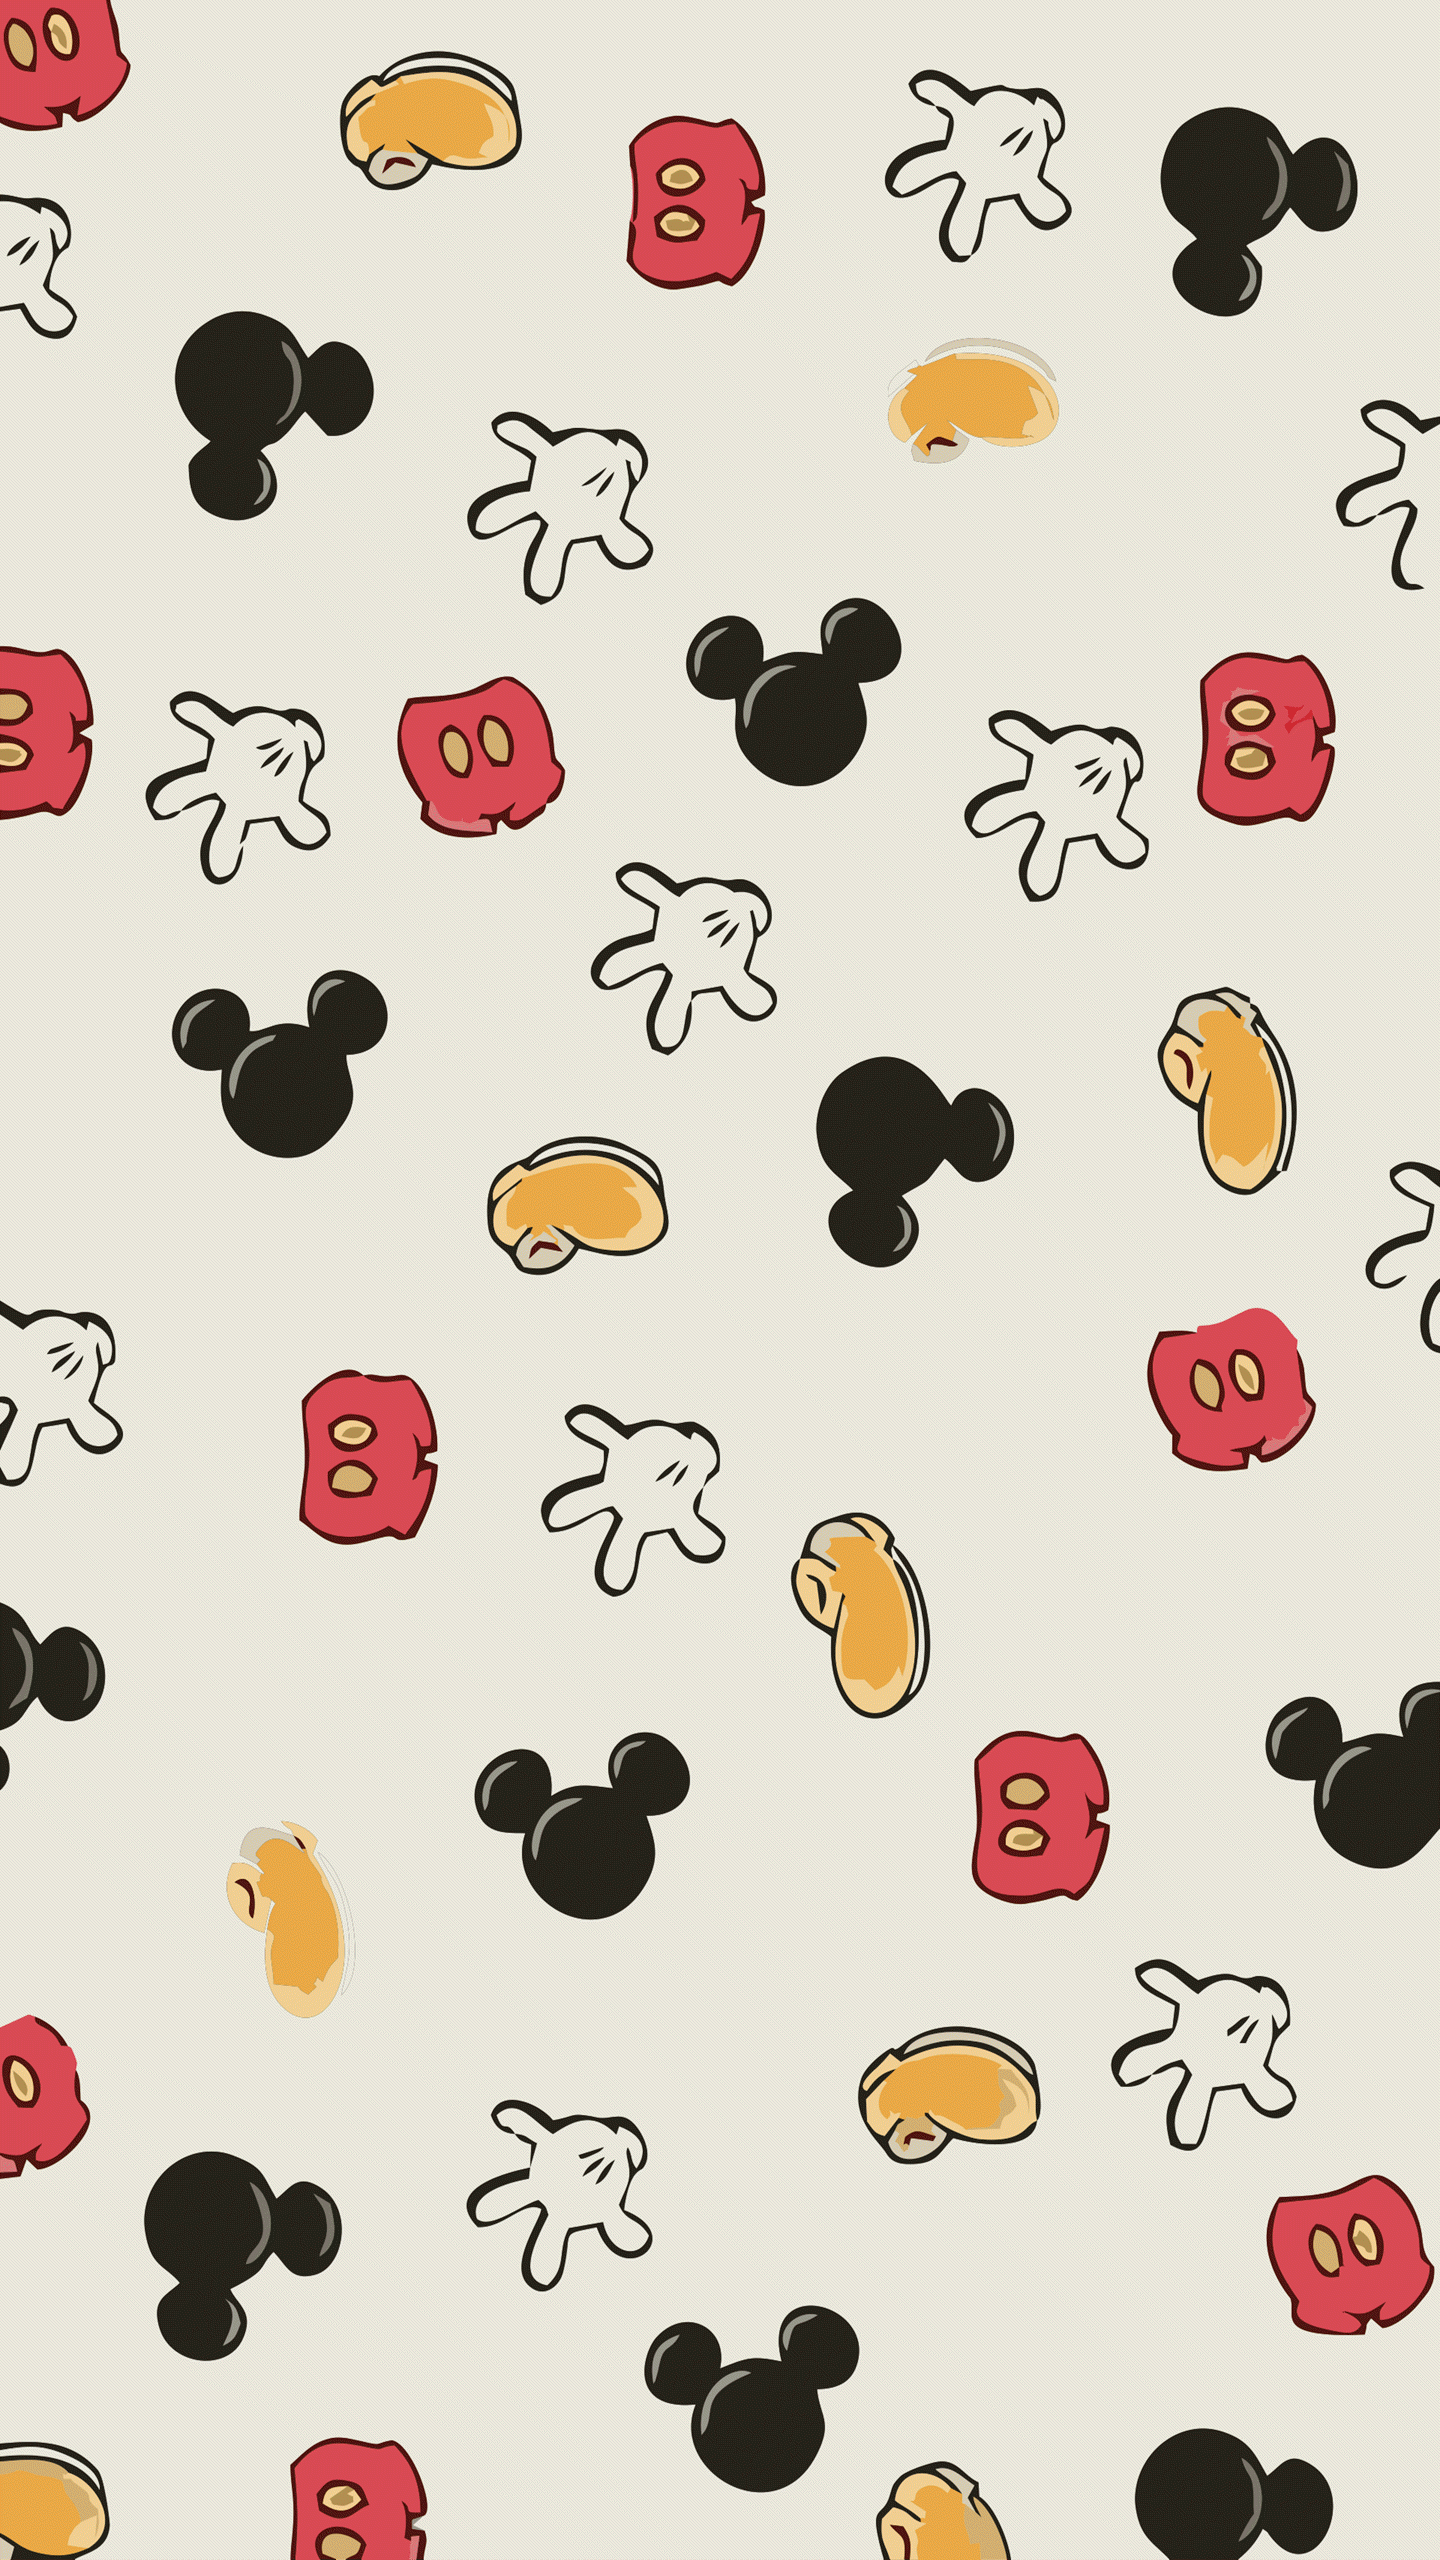 Hình nền Mickey sẽ đem lại cho bạn không gian làm việc và giải trí thật sống động. Sự hài hòa màu sắc và hình ảnh ngộ nghĩnh của Mickey sẽ làm việc và học tập của bạn trở nên thú vị hơn bao giờ hết. Hãy cùng thưởng thức những hình nền Mickey đầy màu sắc và sinh động ngay!